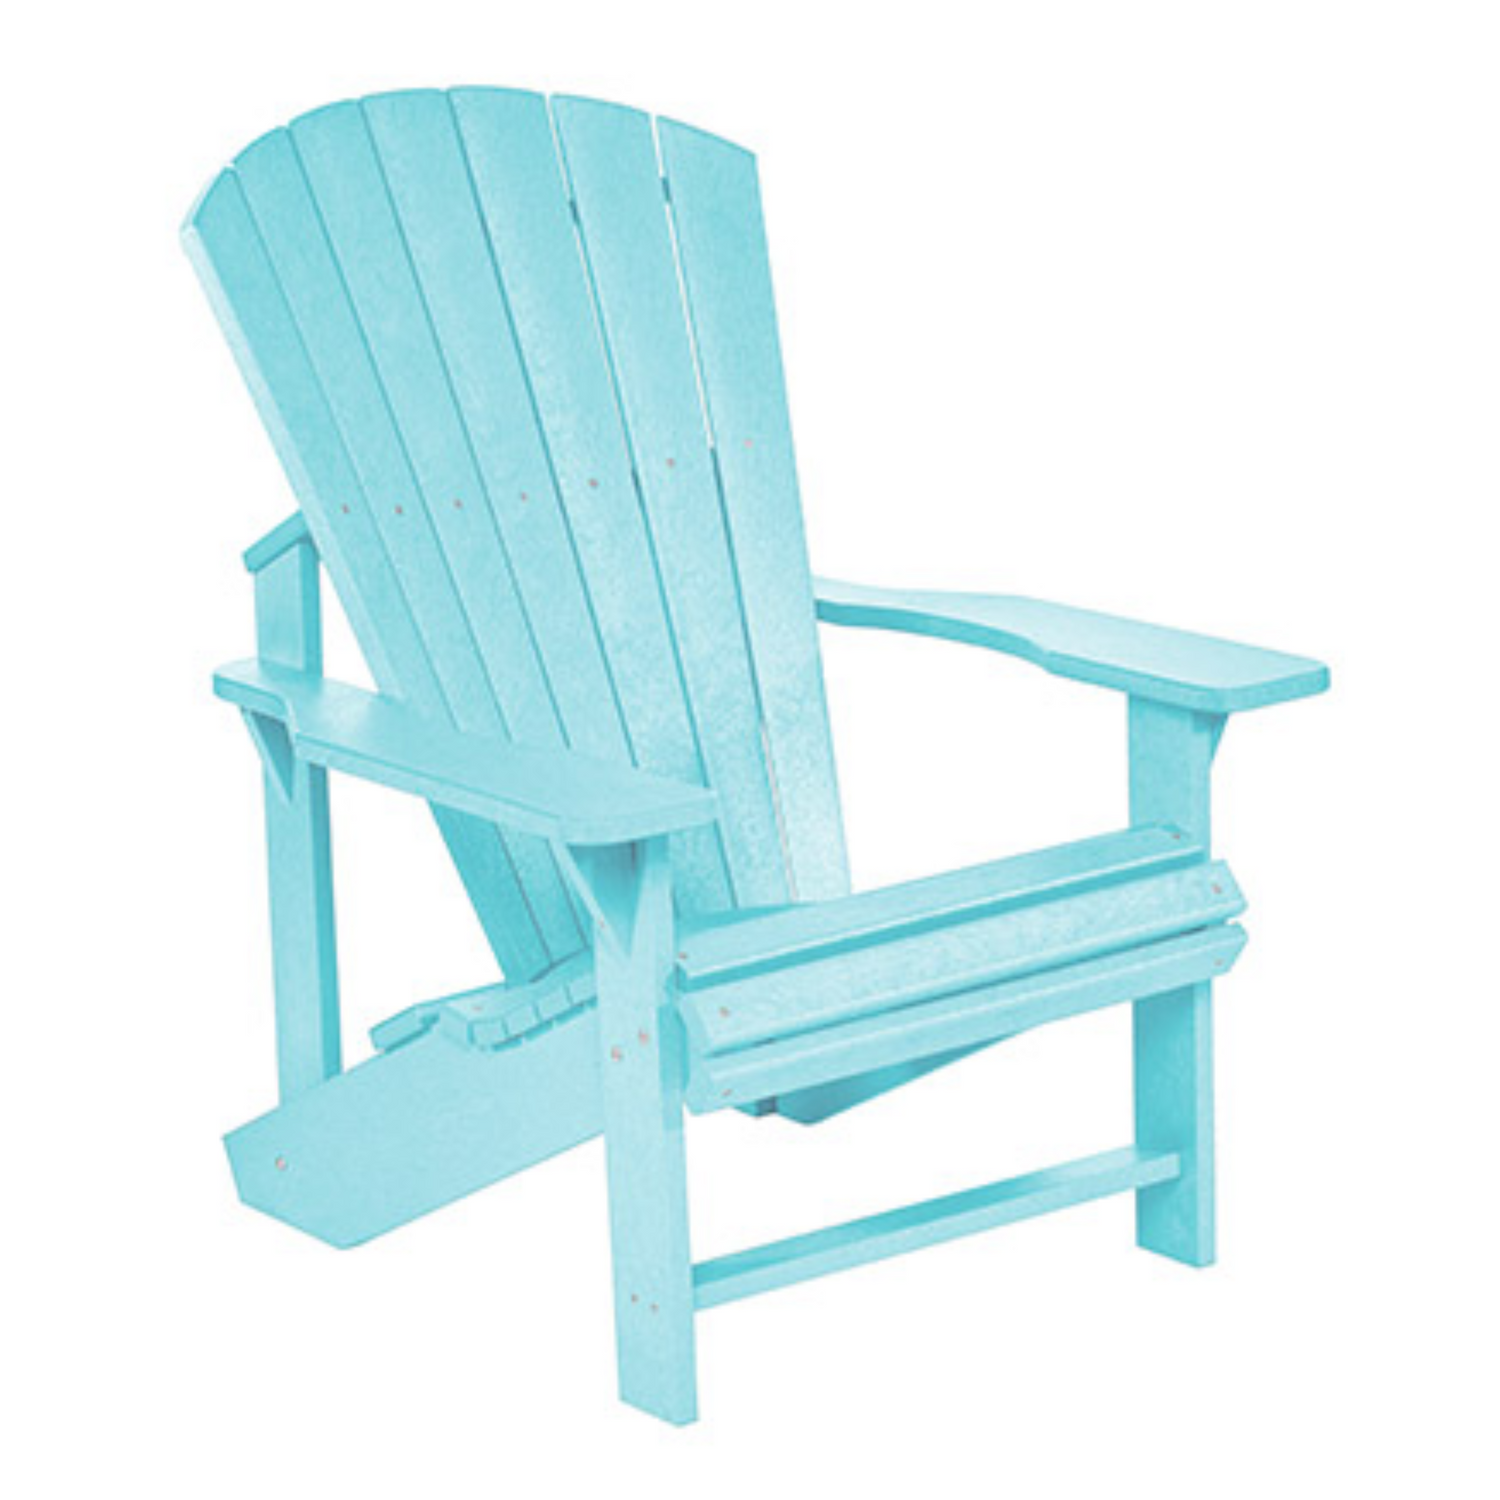 C.R.P. Upright Adirondack Chair In Aqua